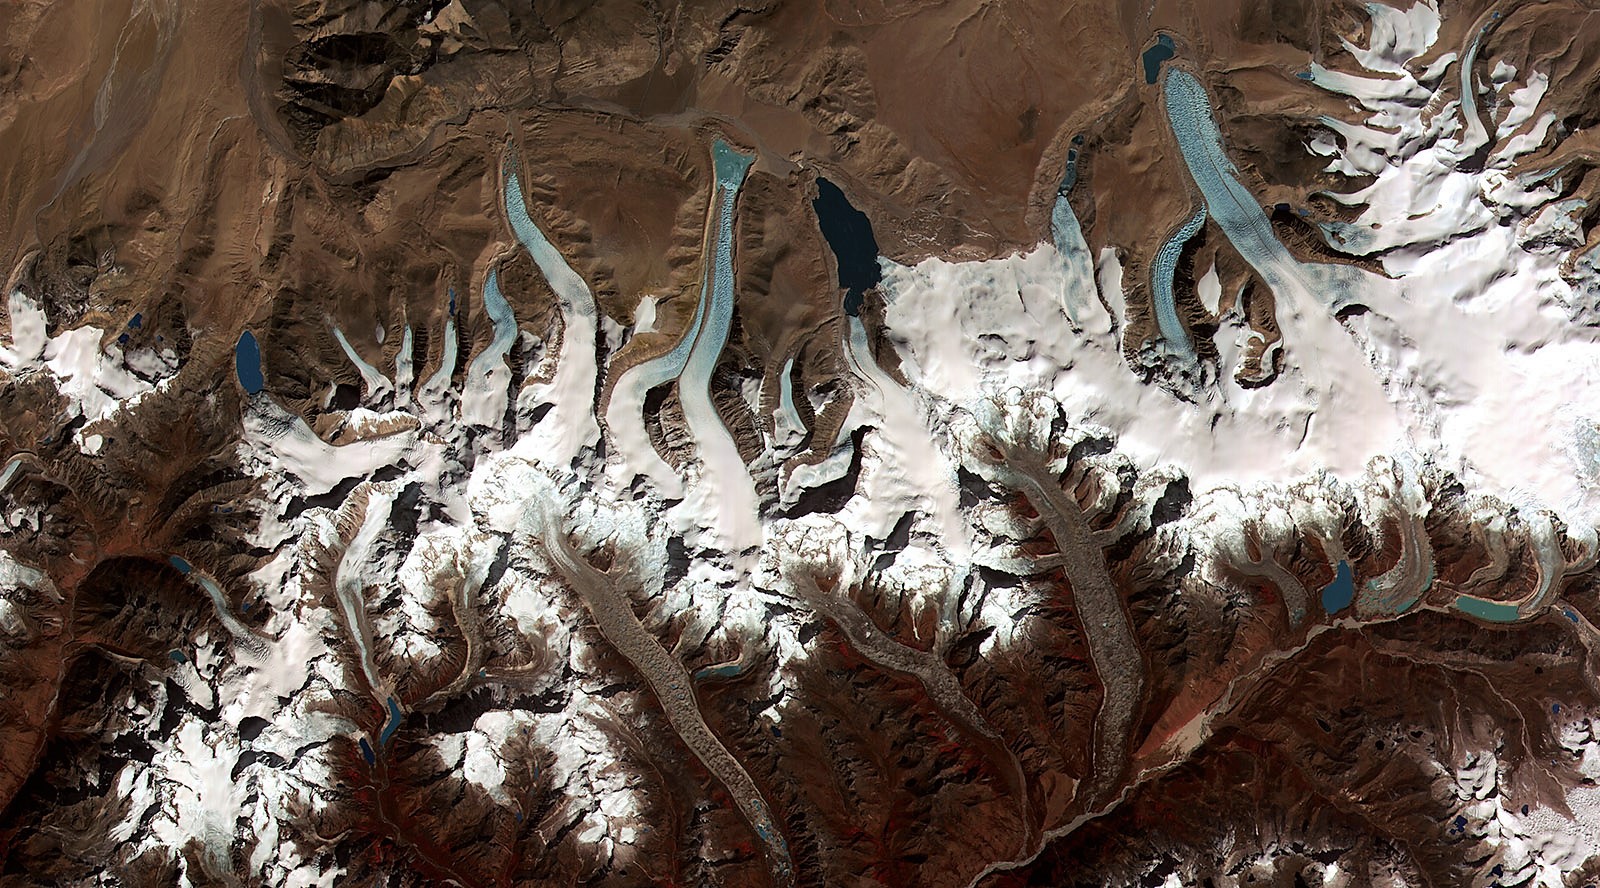 Junge Gletscherseen vor Rückzugsgletschern im Himalaya von Bhutan